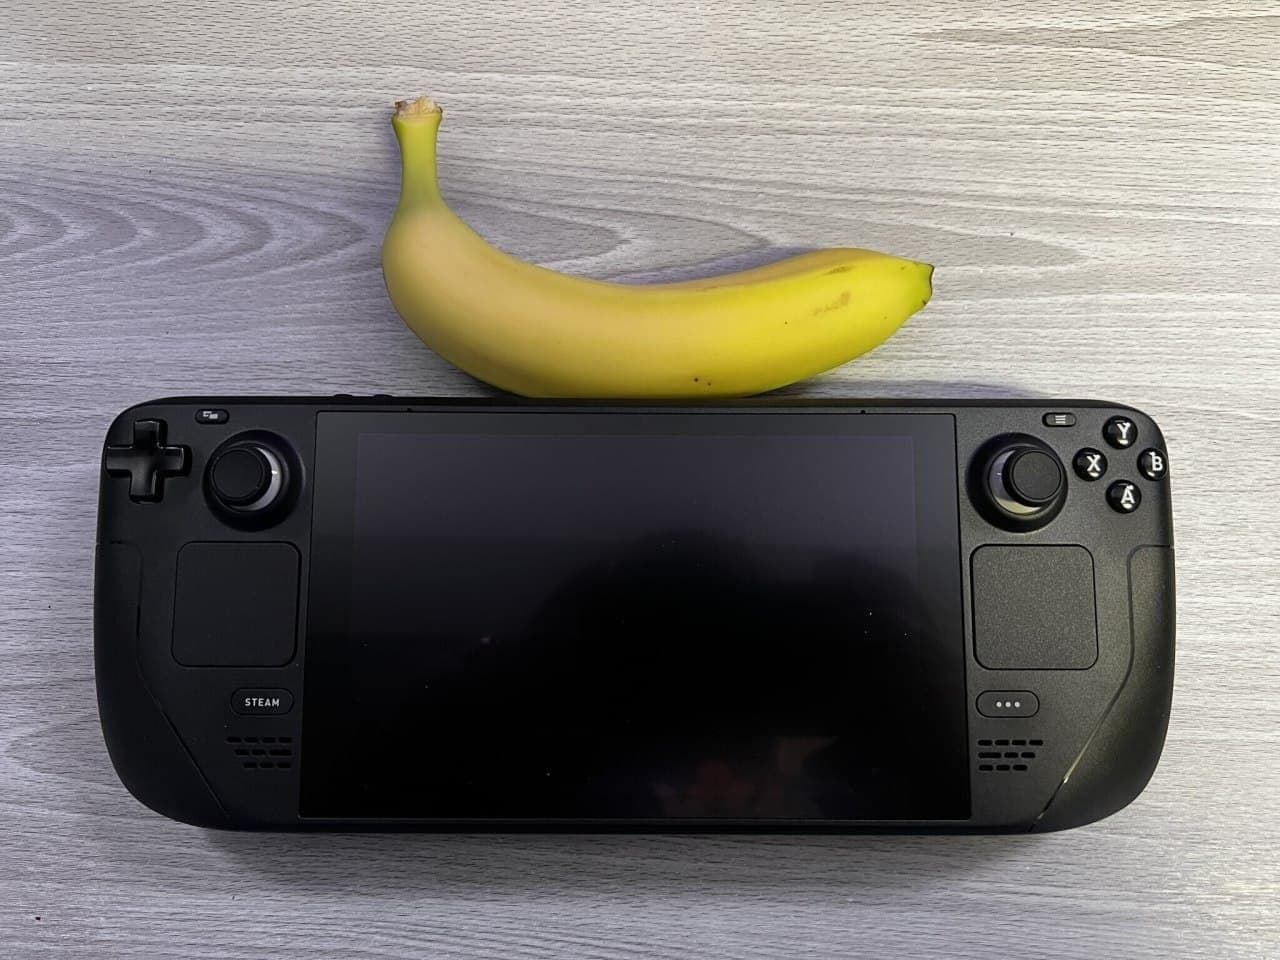 Comparaison visuelle de Steam Deck avec d'autres consoles portables et une banane-2